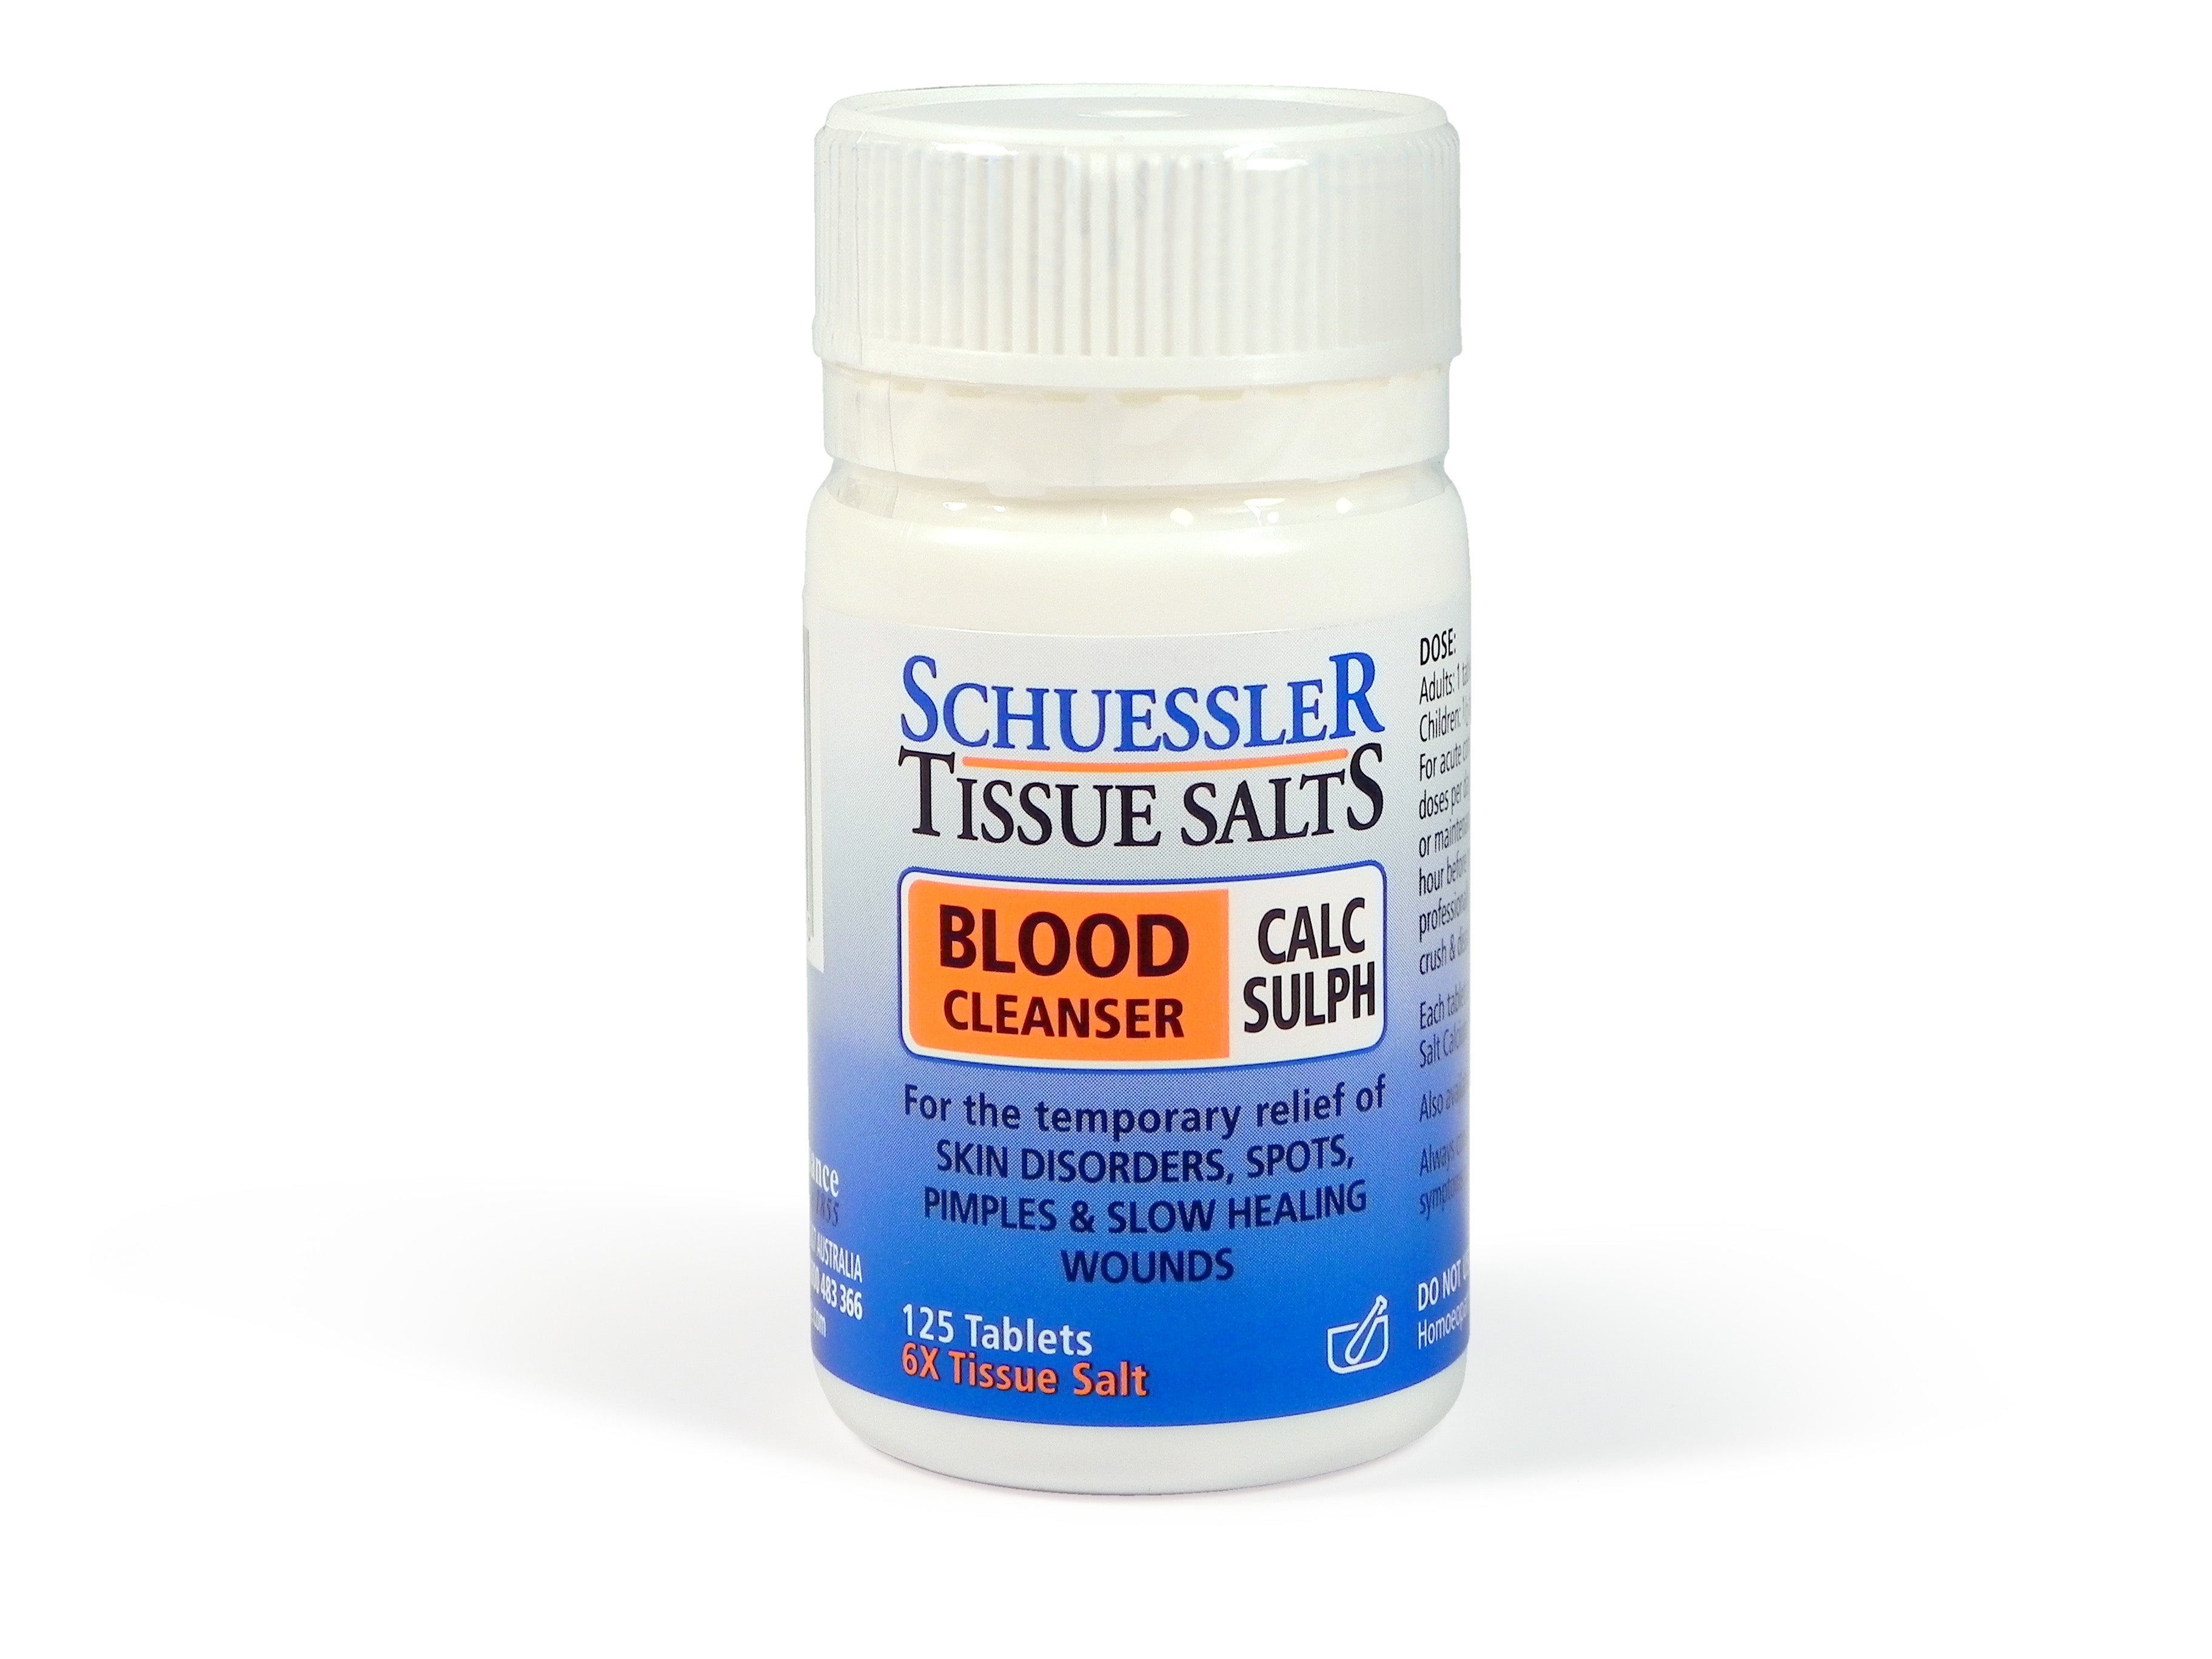 Schuessler Tissue Salts - Calc Sulph